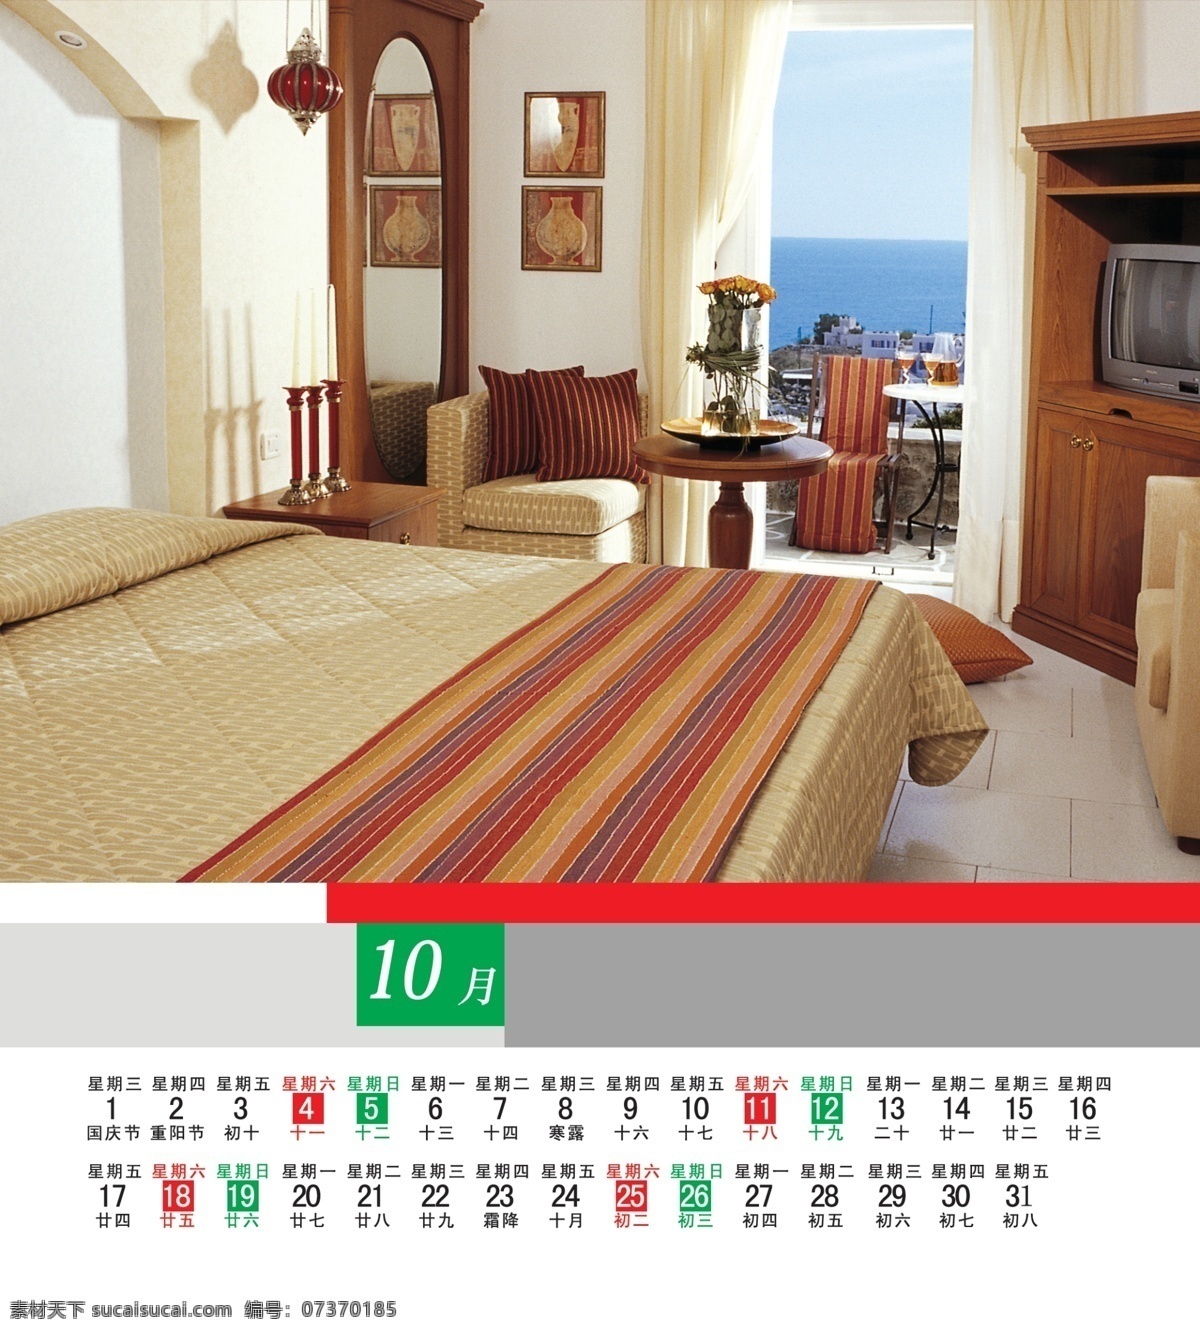 2014 年 日历 模板下载 床 广告设计模板 家具 其他模版 室内效果图 卧室效果图 源文件 节日素材 其他节日